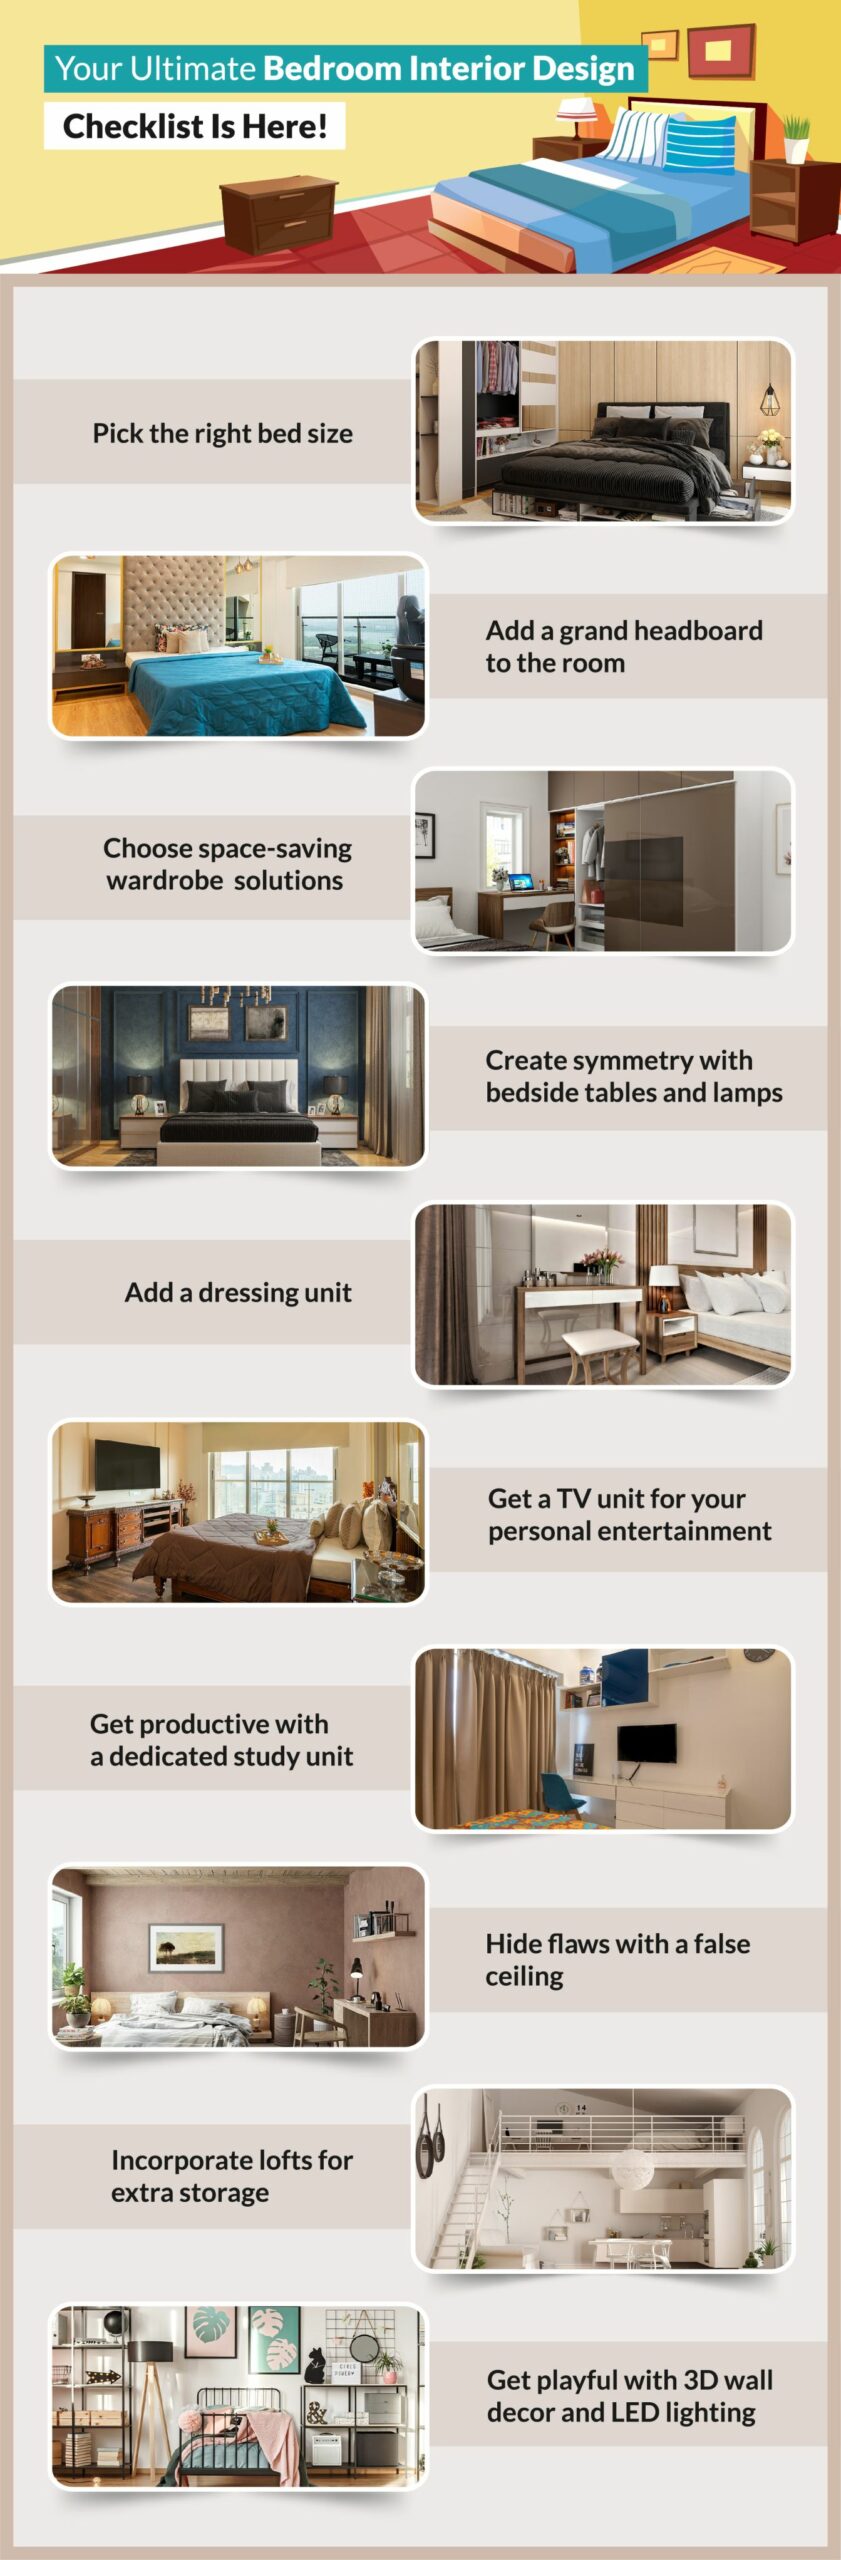 Ultimate bedroom interior design checklist